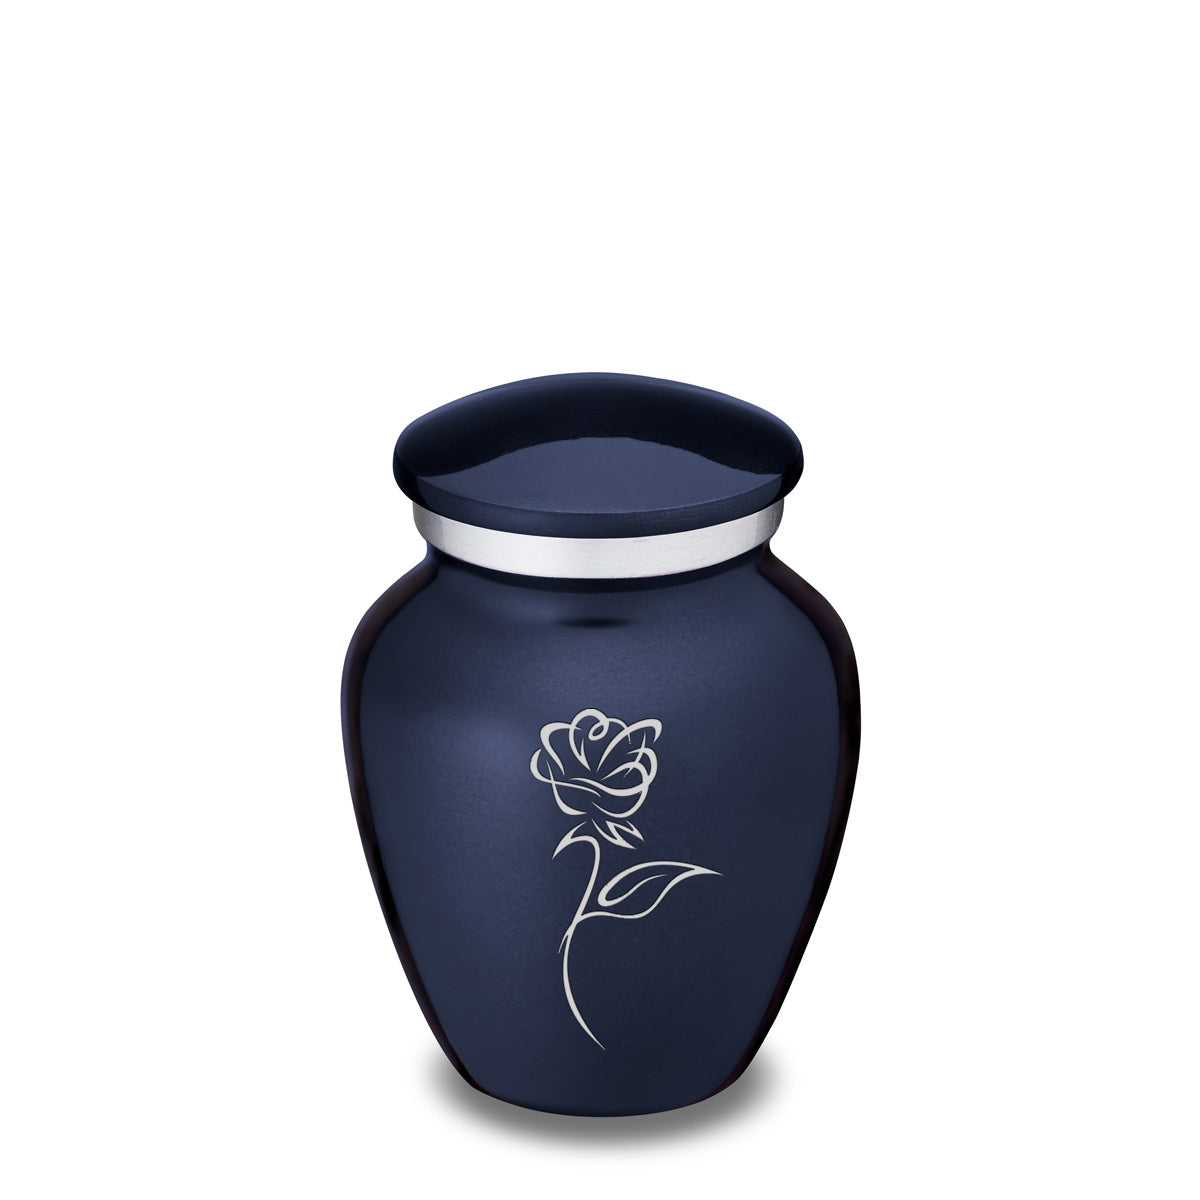 Keepsake Embrace Cobalt Blue Rose Cremation Urn